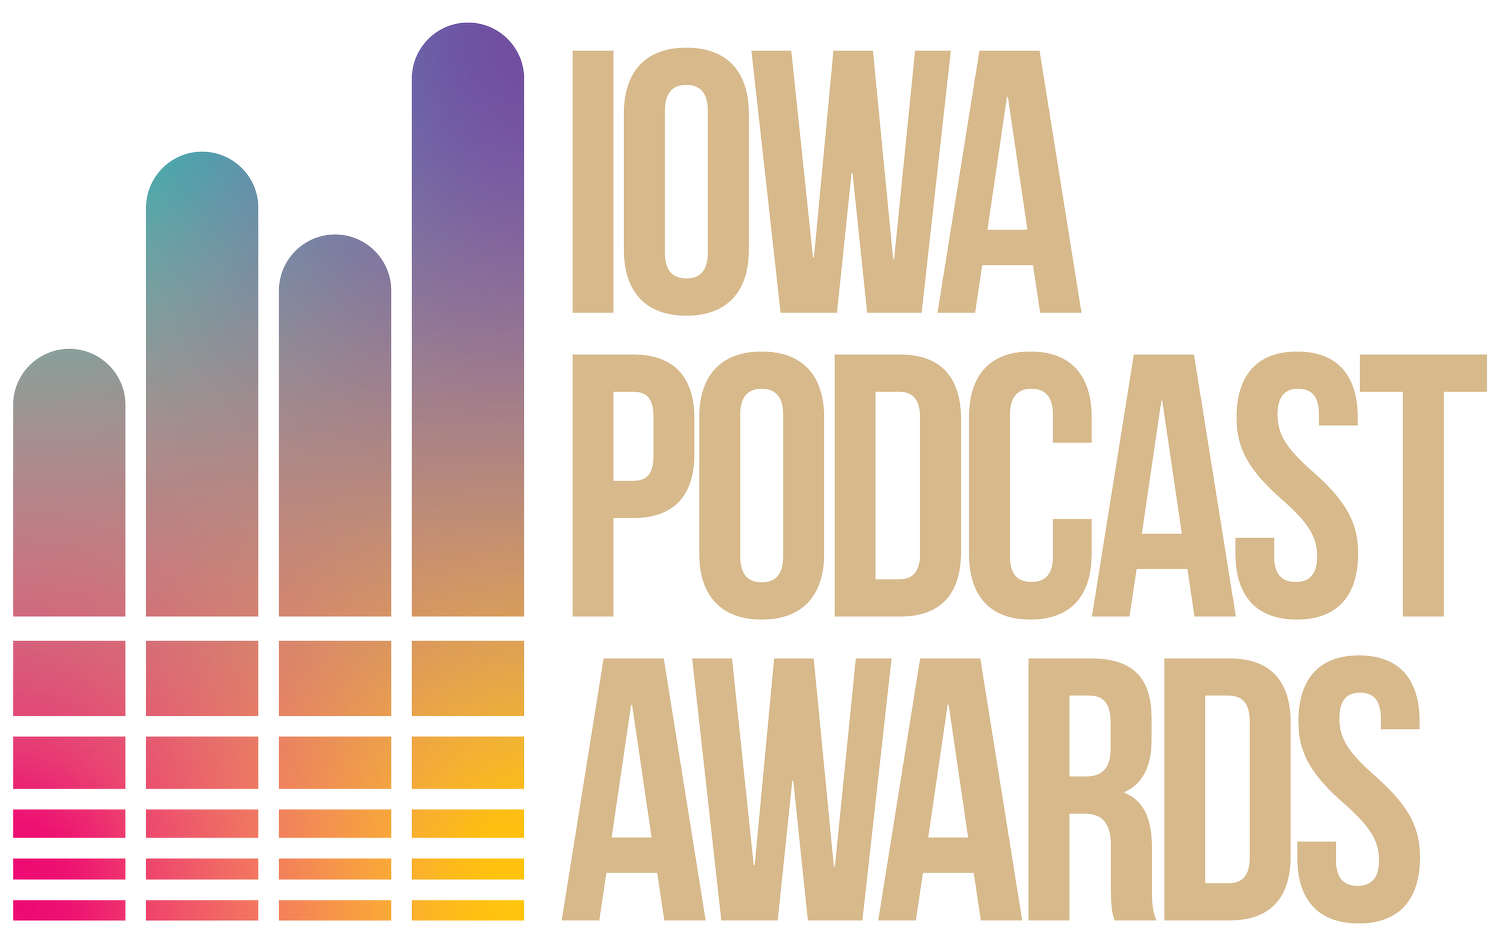 Iowa Podcast Awards